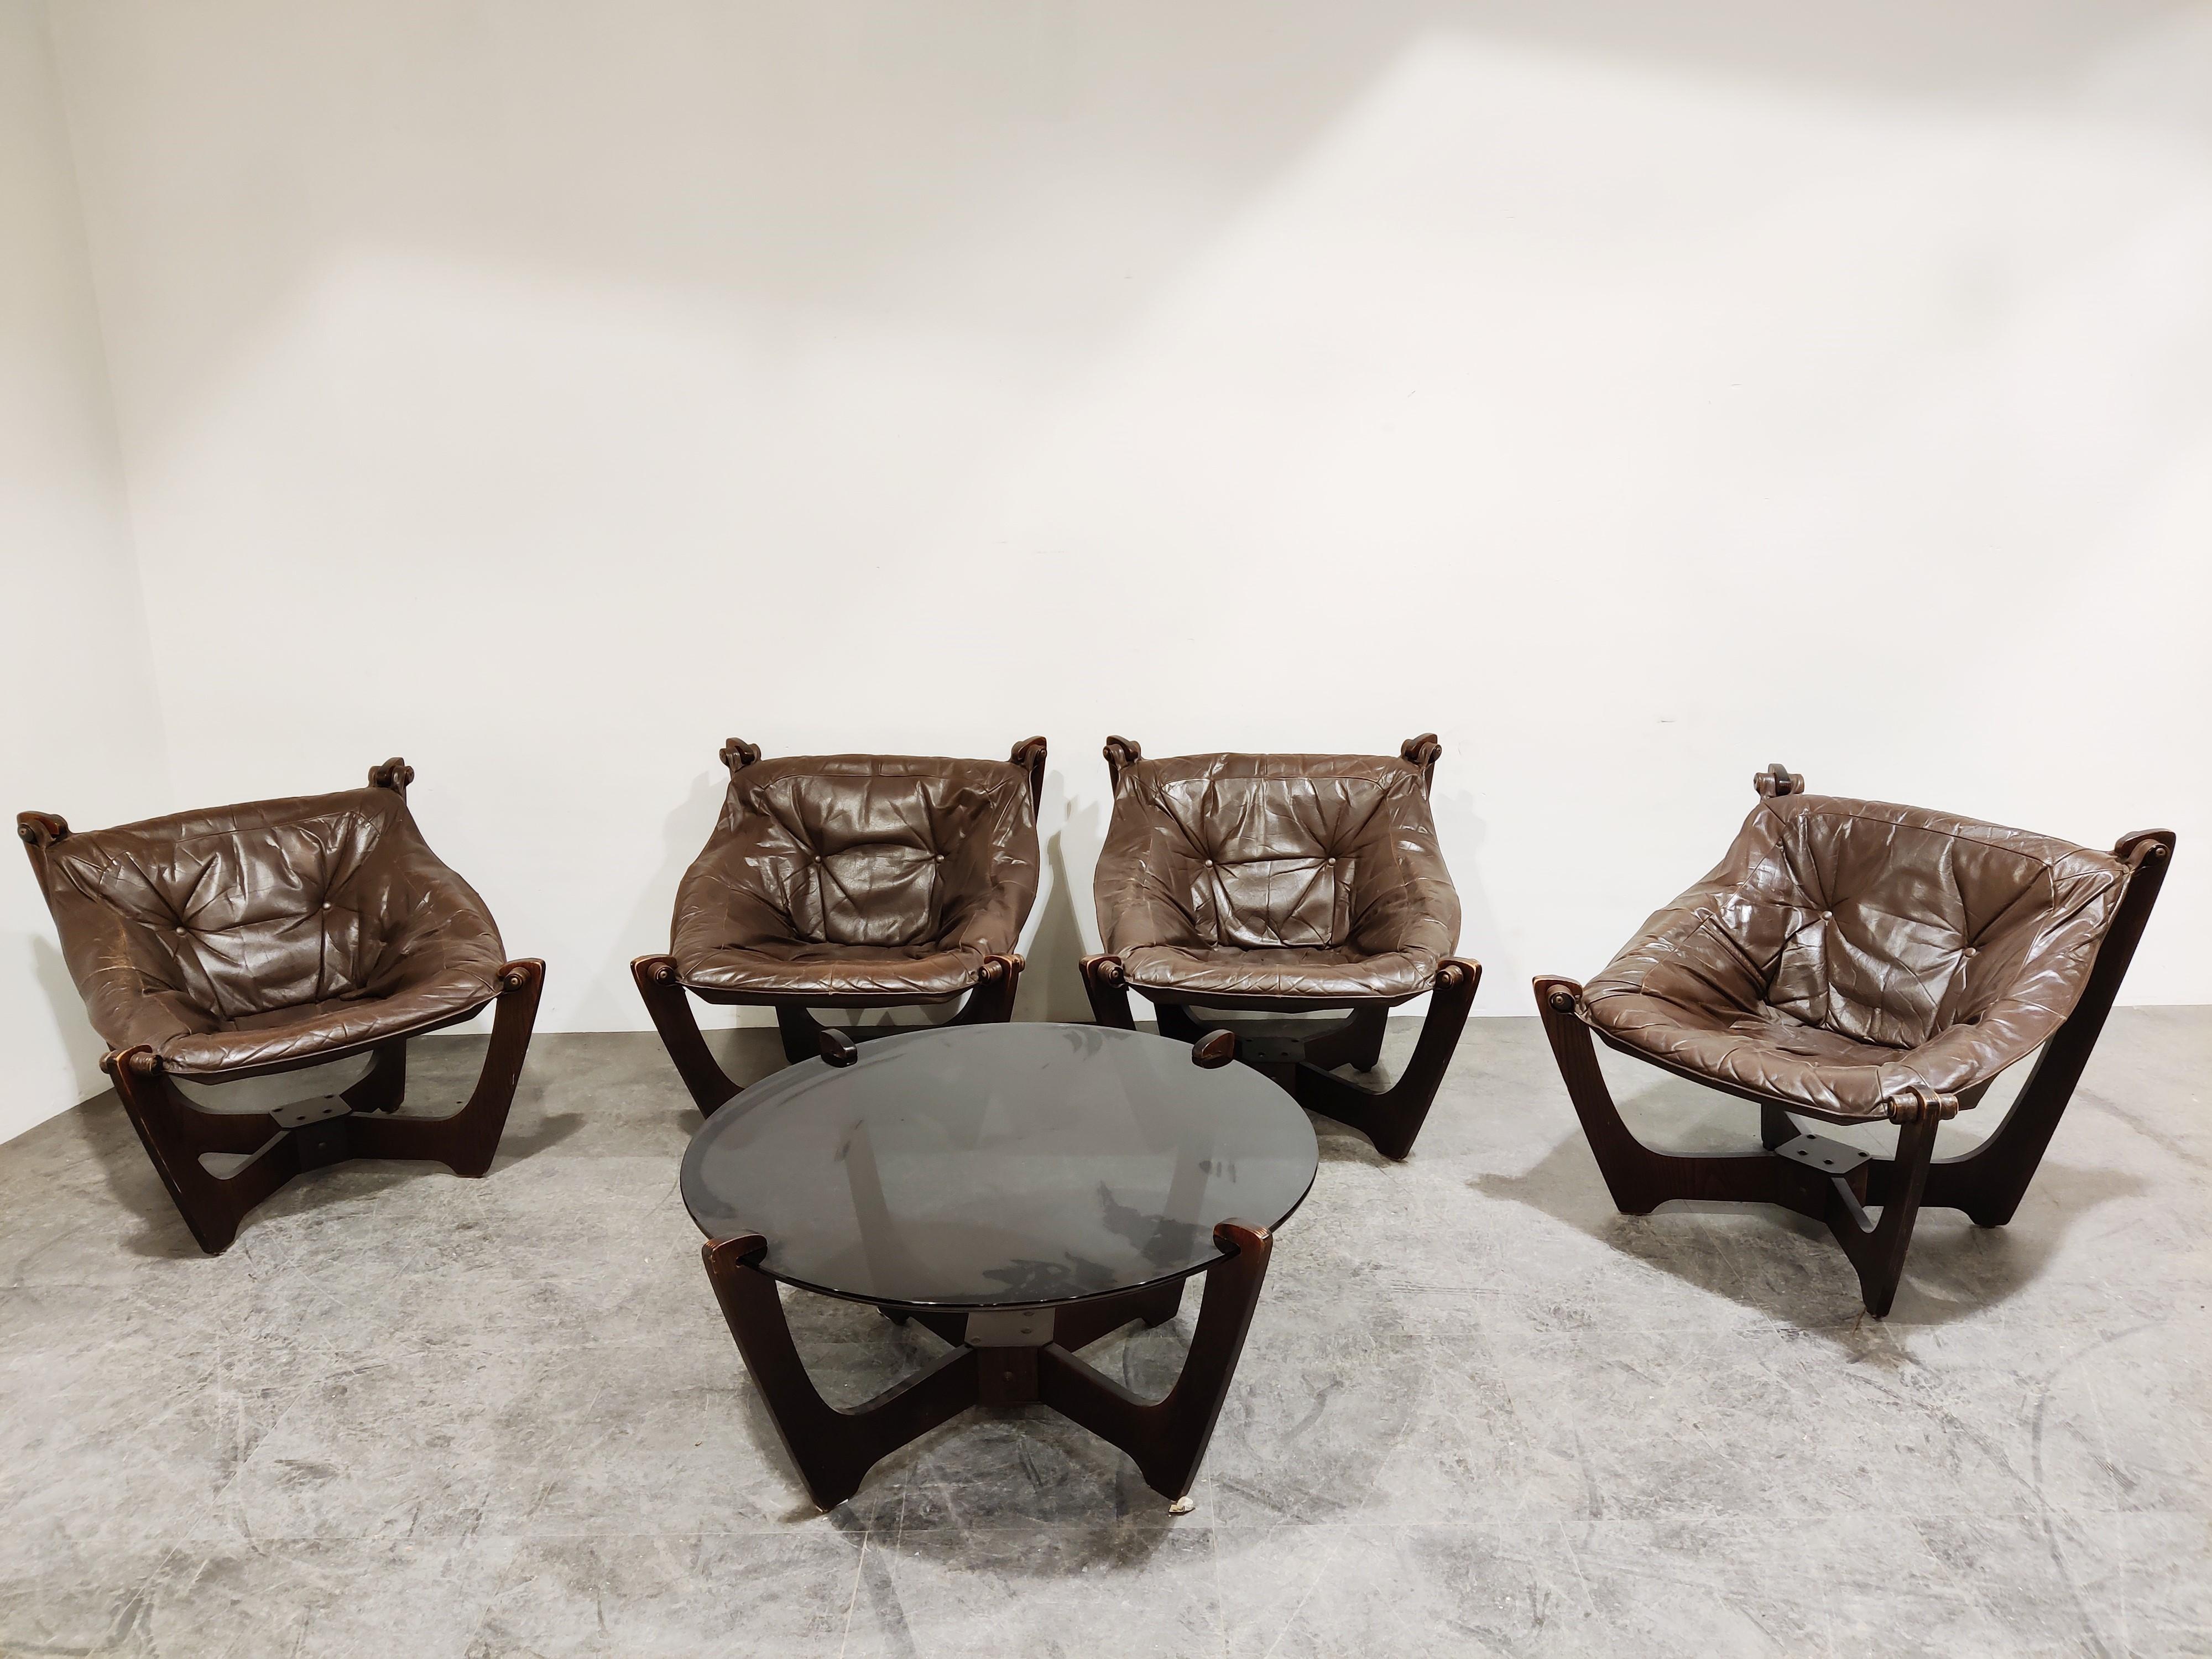 Wunderschönes Wohnzimmer-Set aus der Mitte des Jahrhunderts:: bestehend aus 4 'Luna'-Sesseln und einem passenden Couchtisch von Odd Knutsen. 

Die Stühle haben ein einzigartiges Holzgestell mit Sling-Ledersitzen. 
Der Couchtisch hat eine Platte aus